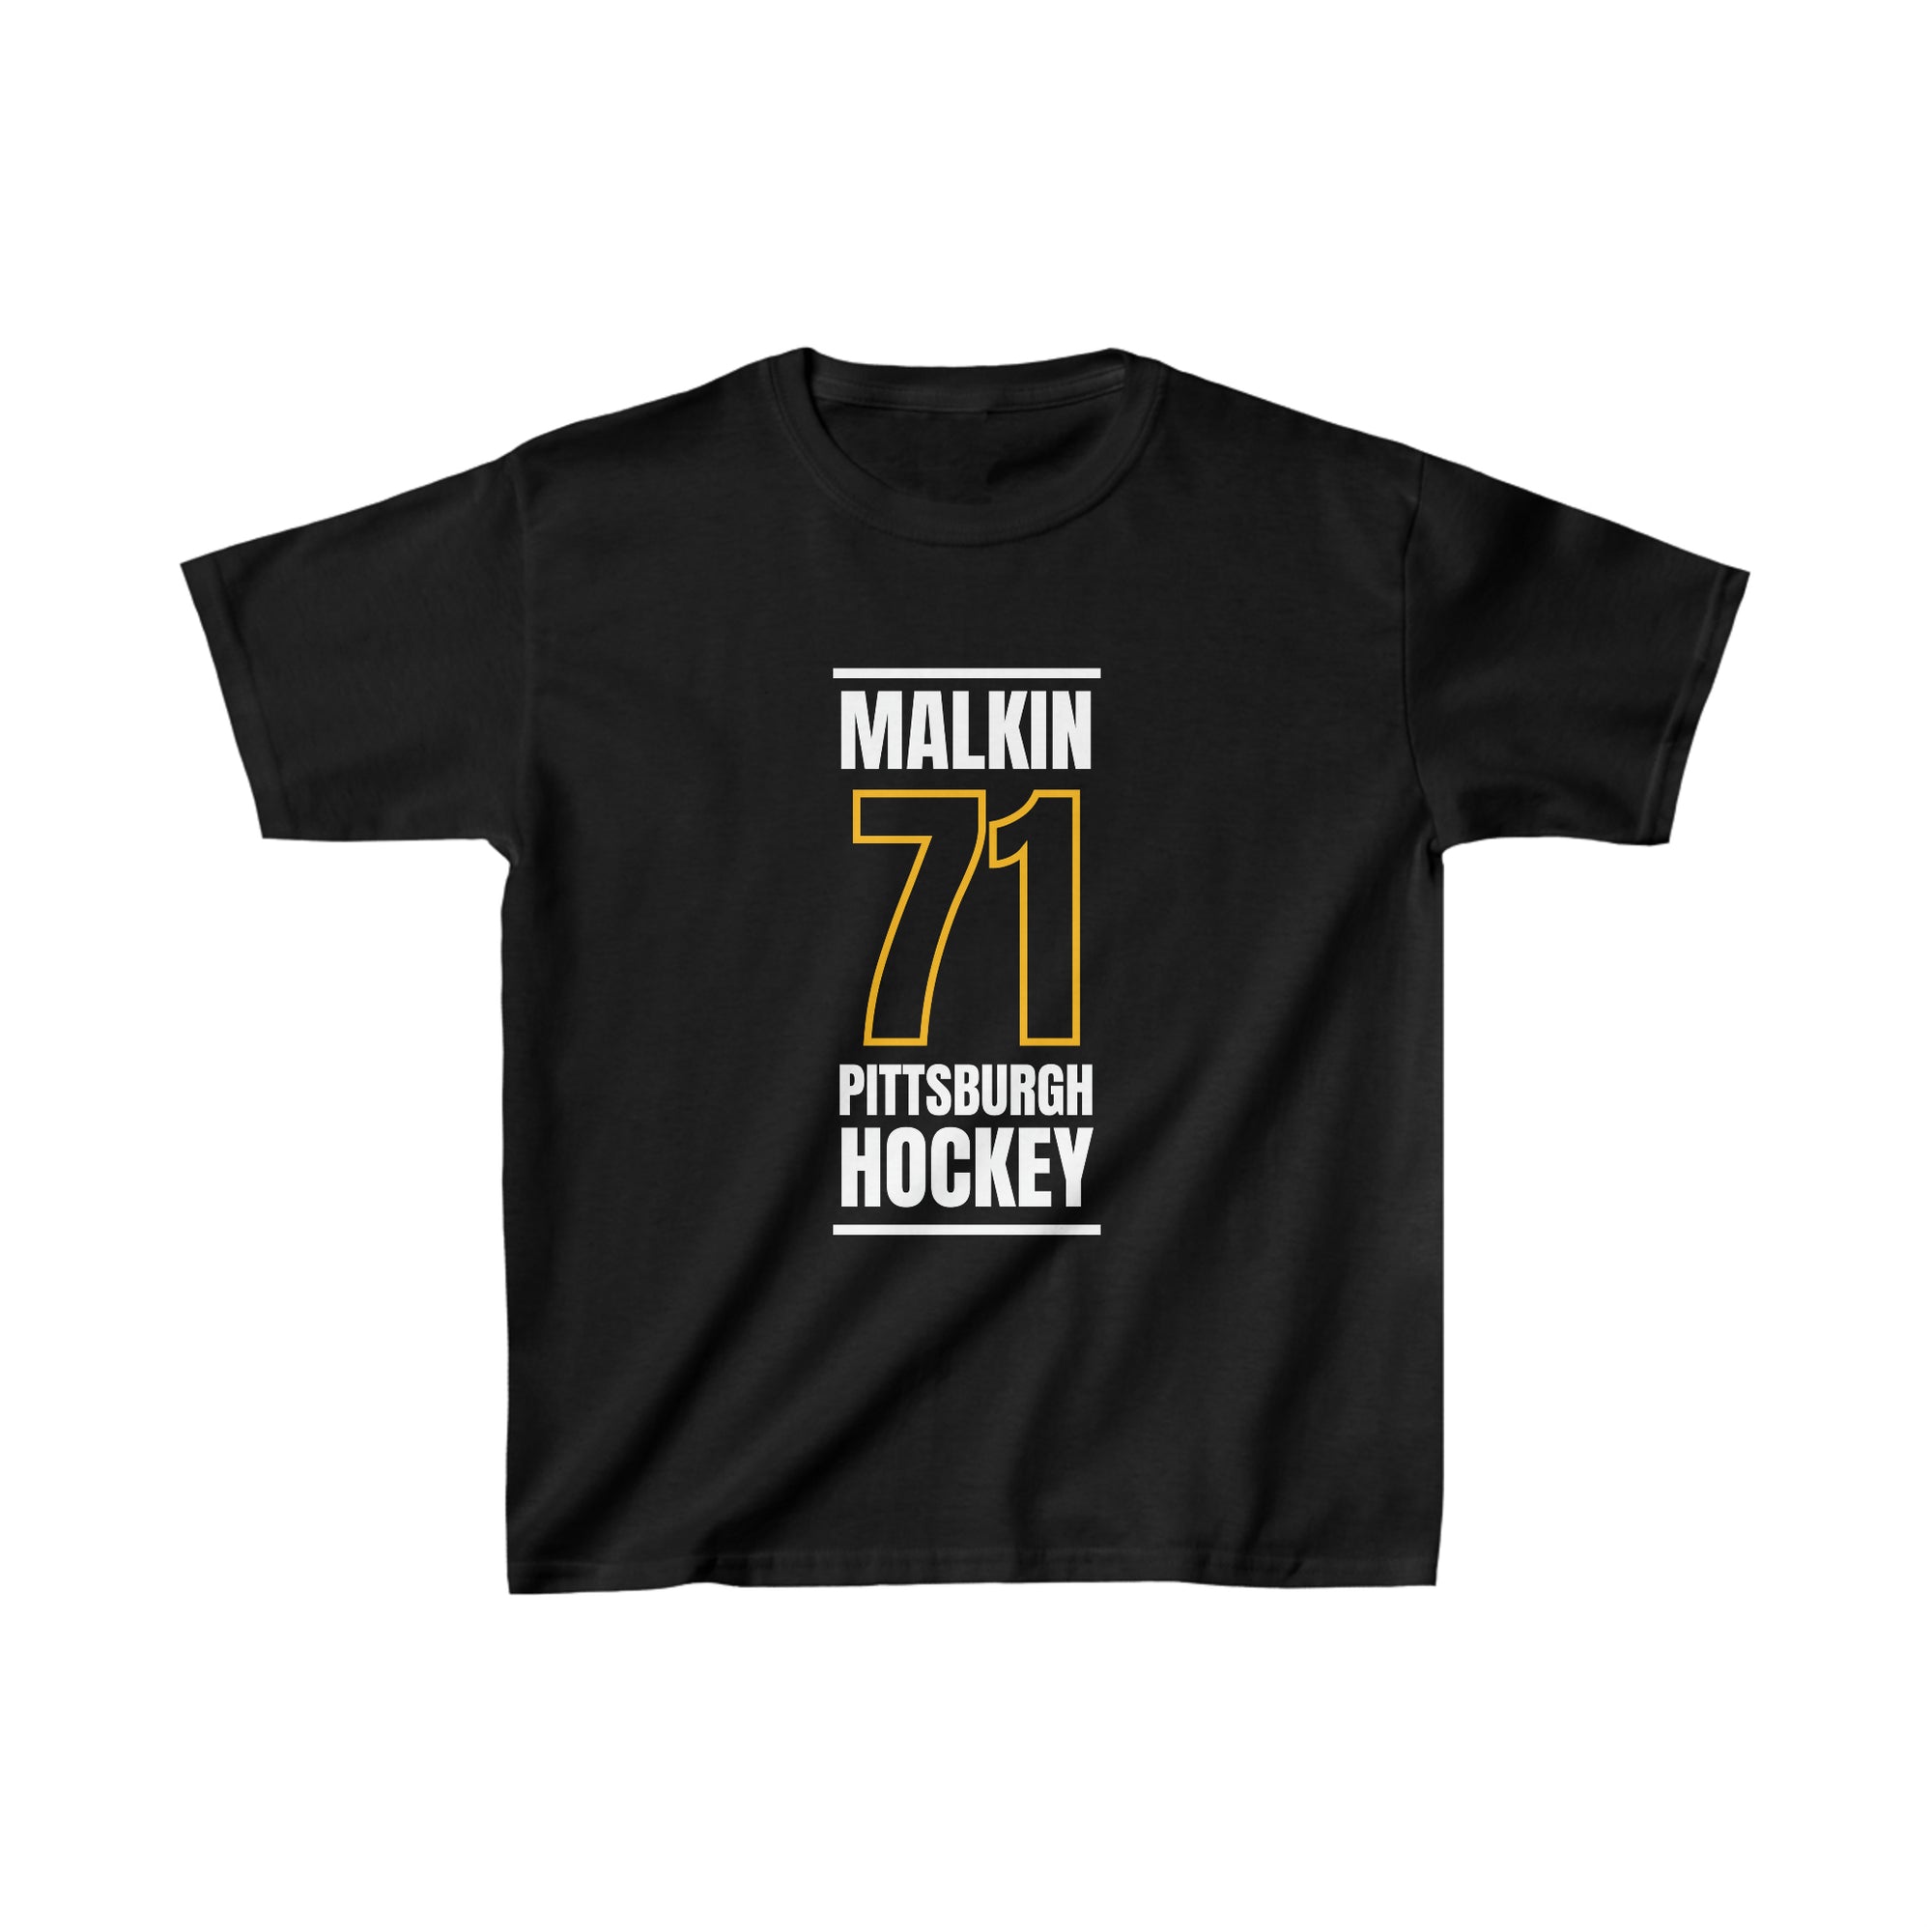 Malkin 71 Pittsburgh Hockey Black Vertical Design Kids Tee